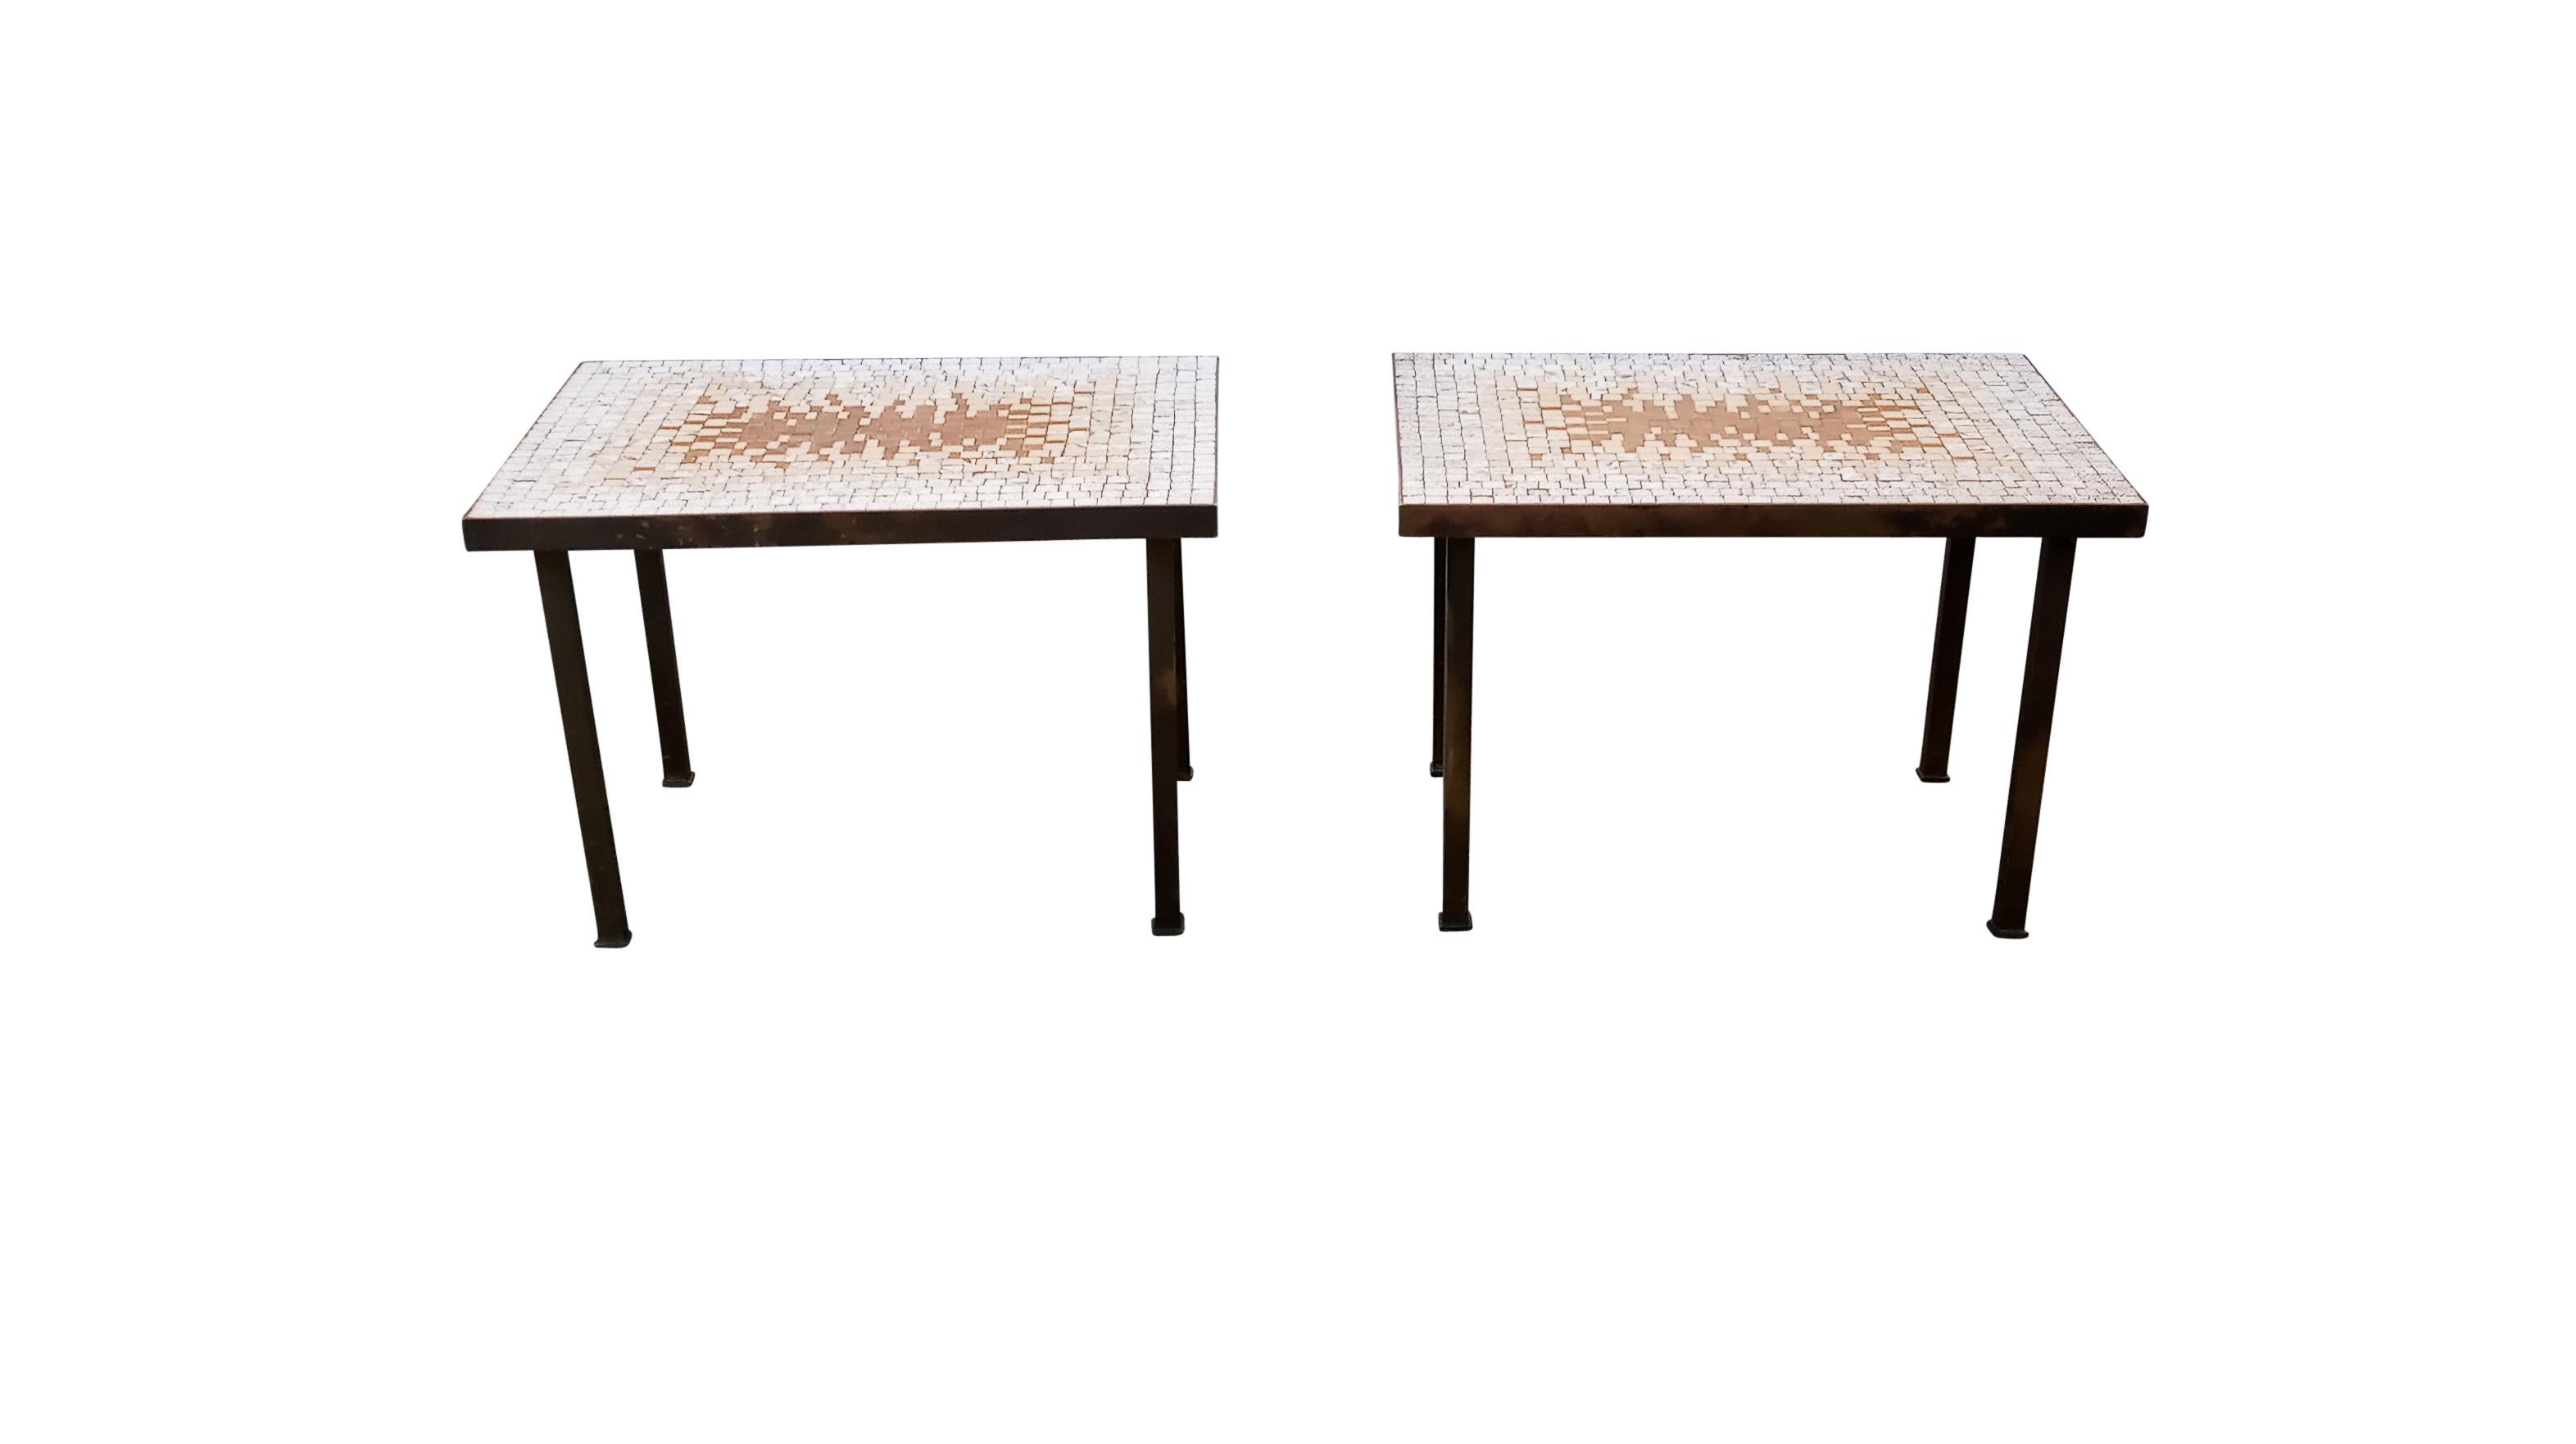 Dans le style de Gordon & Marshall Martz, Edward Wormley ou Samson Berman, cette paire de tables d'appoint véritablement vintage ne manquera pas d'attirer les foules. Les plateaux sont ornés d'un magnifique motif en rayons de soleil composé de